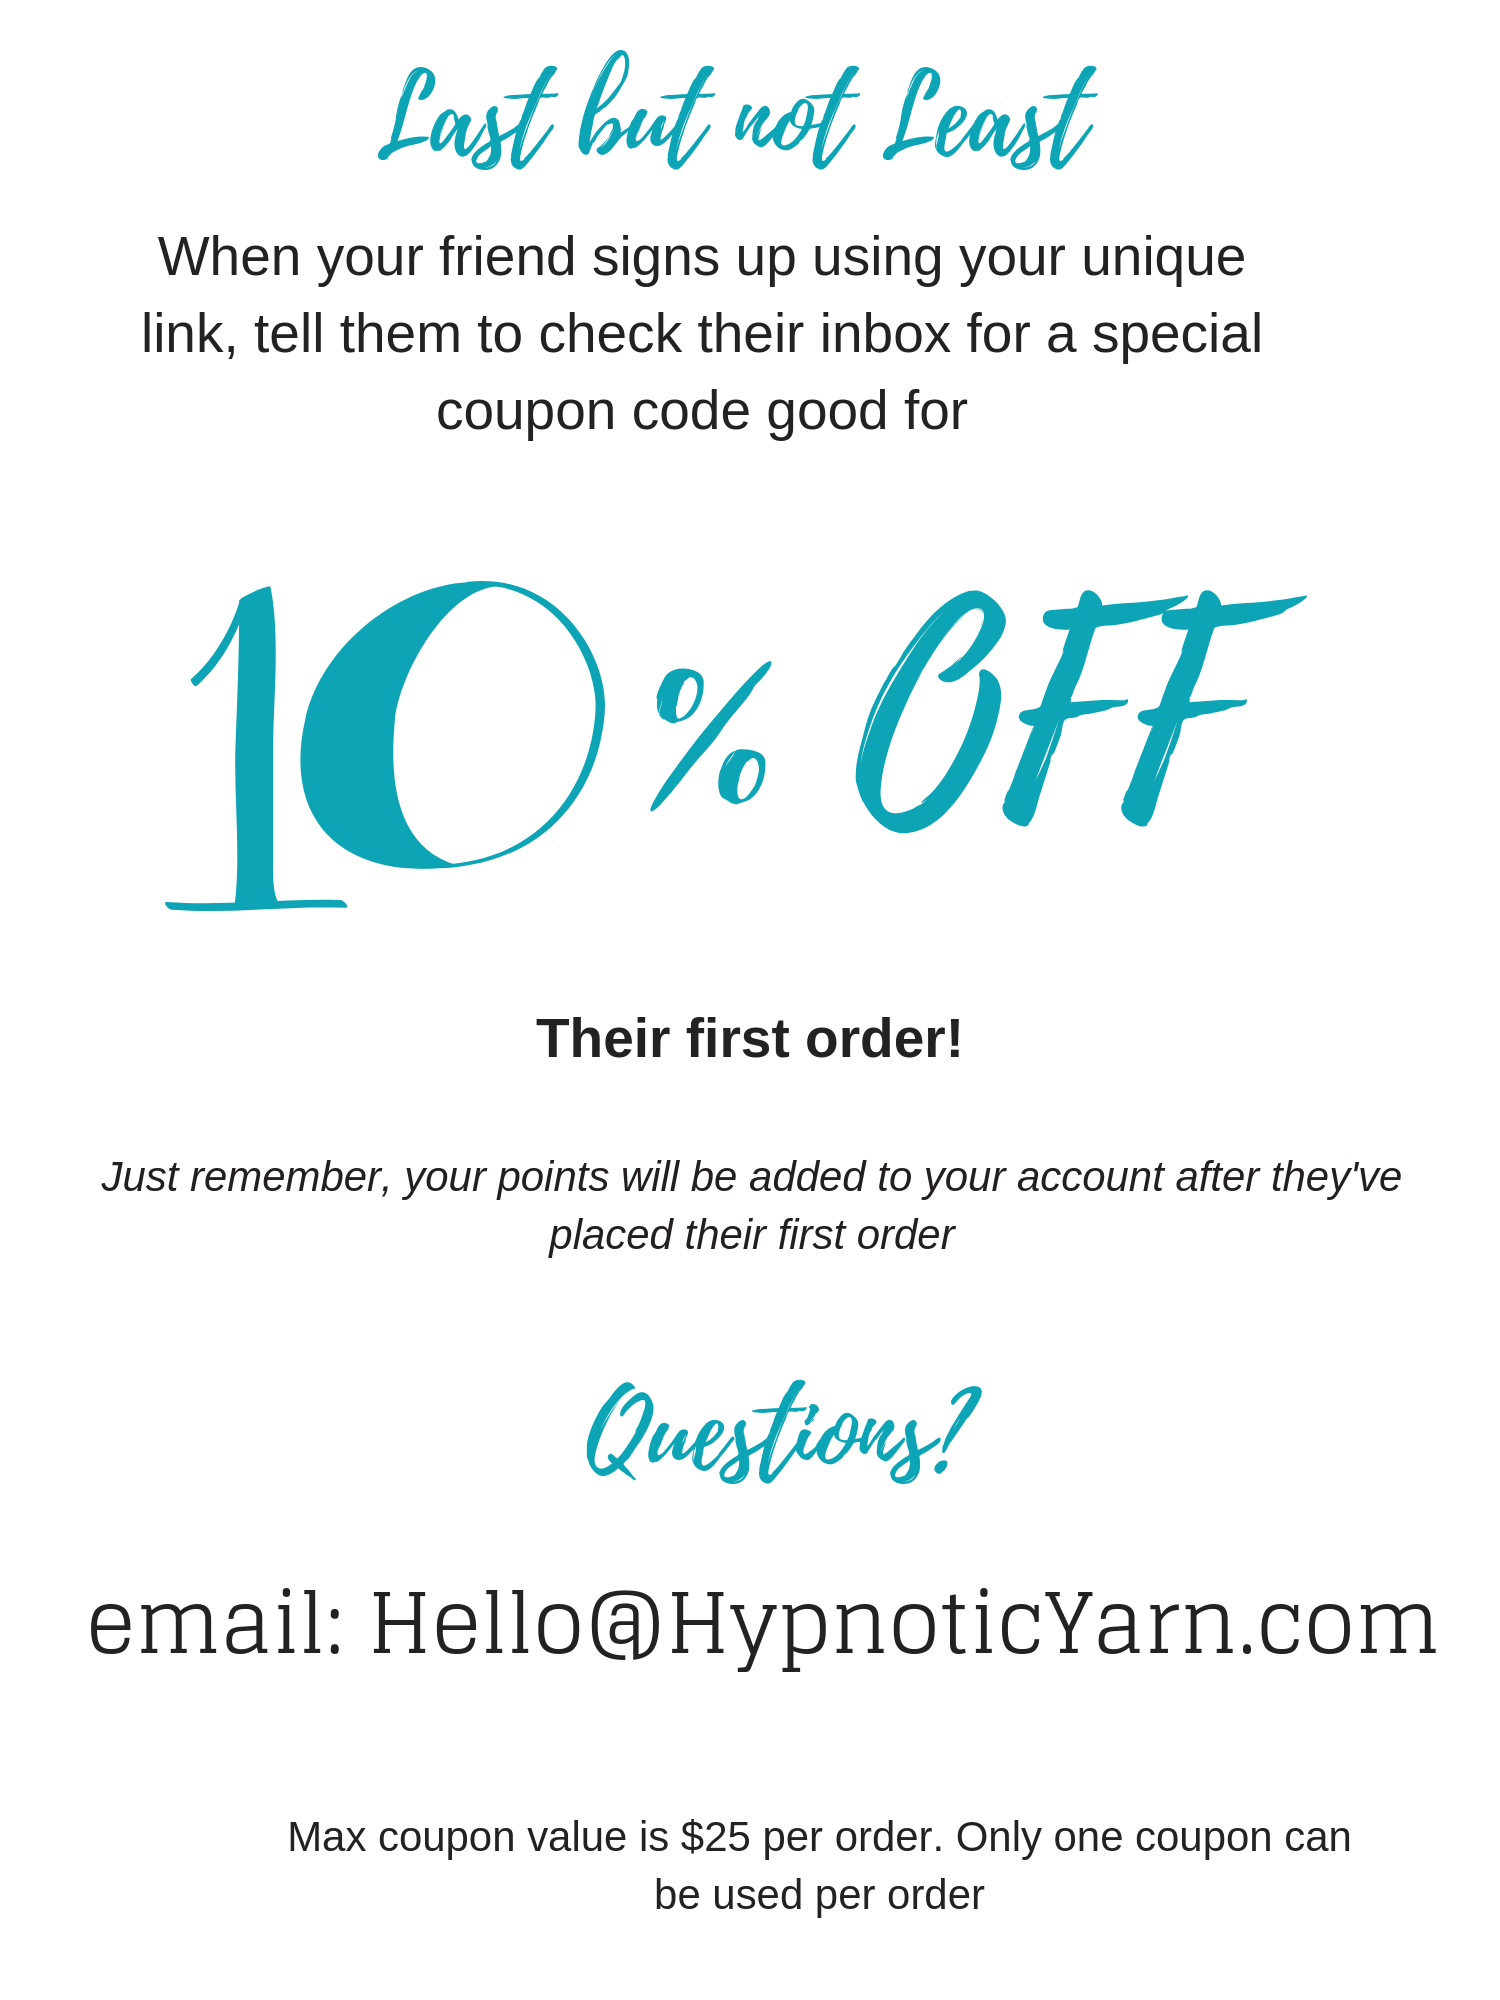 Hypnotic Yarn Friends & Family